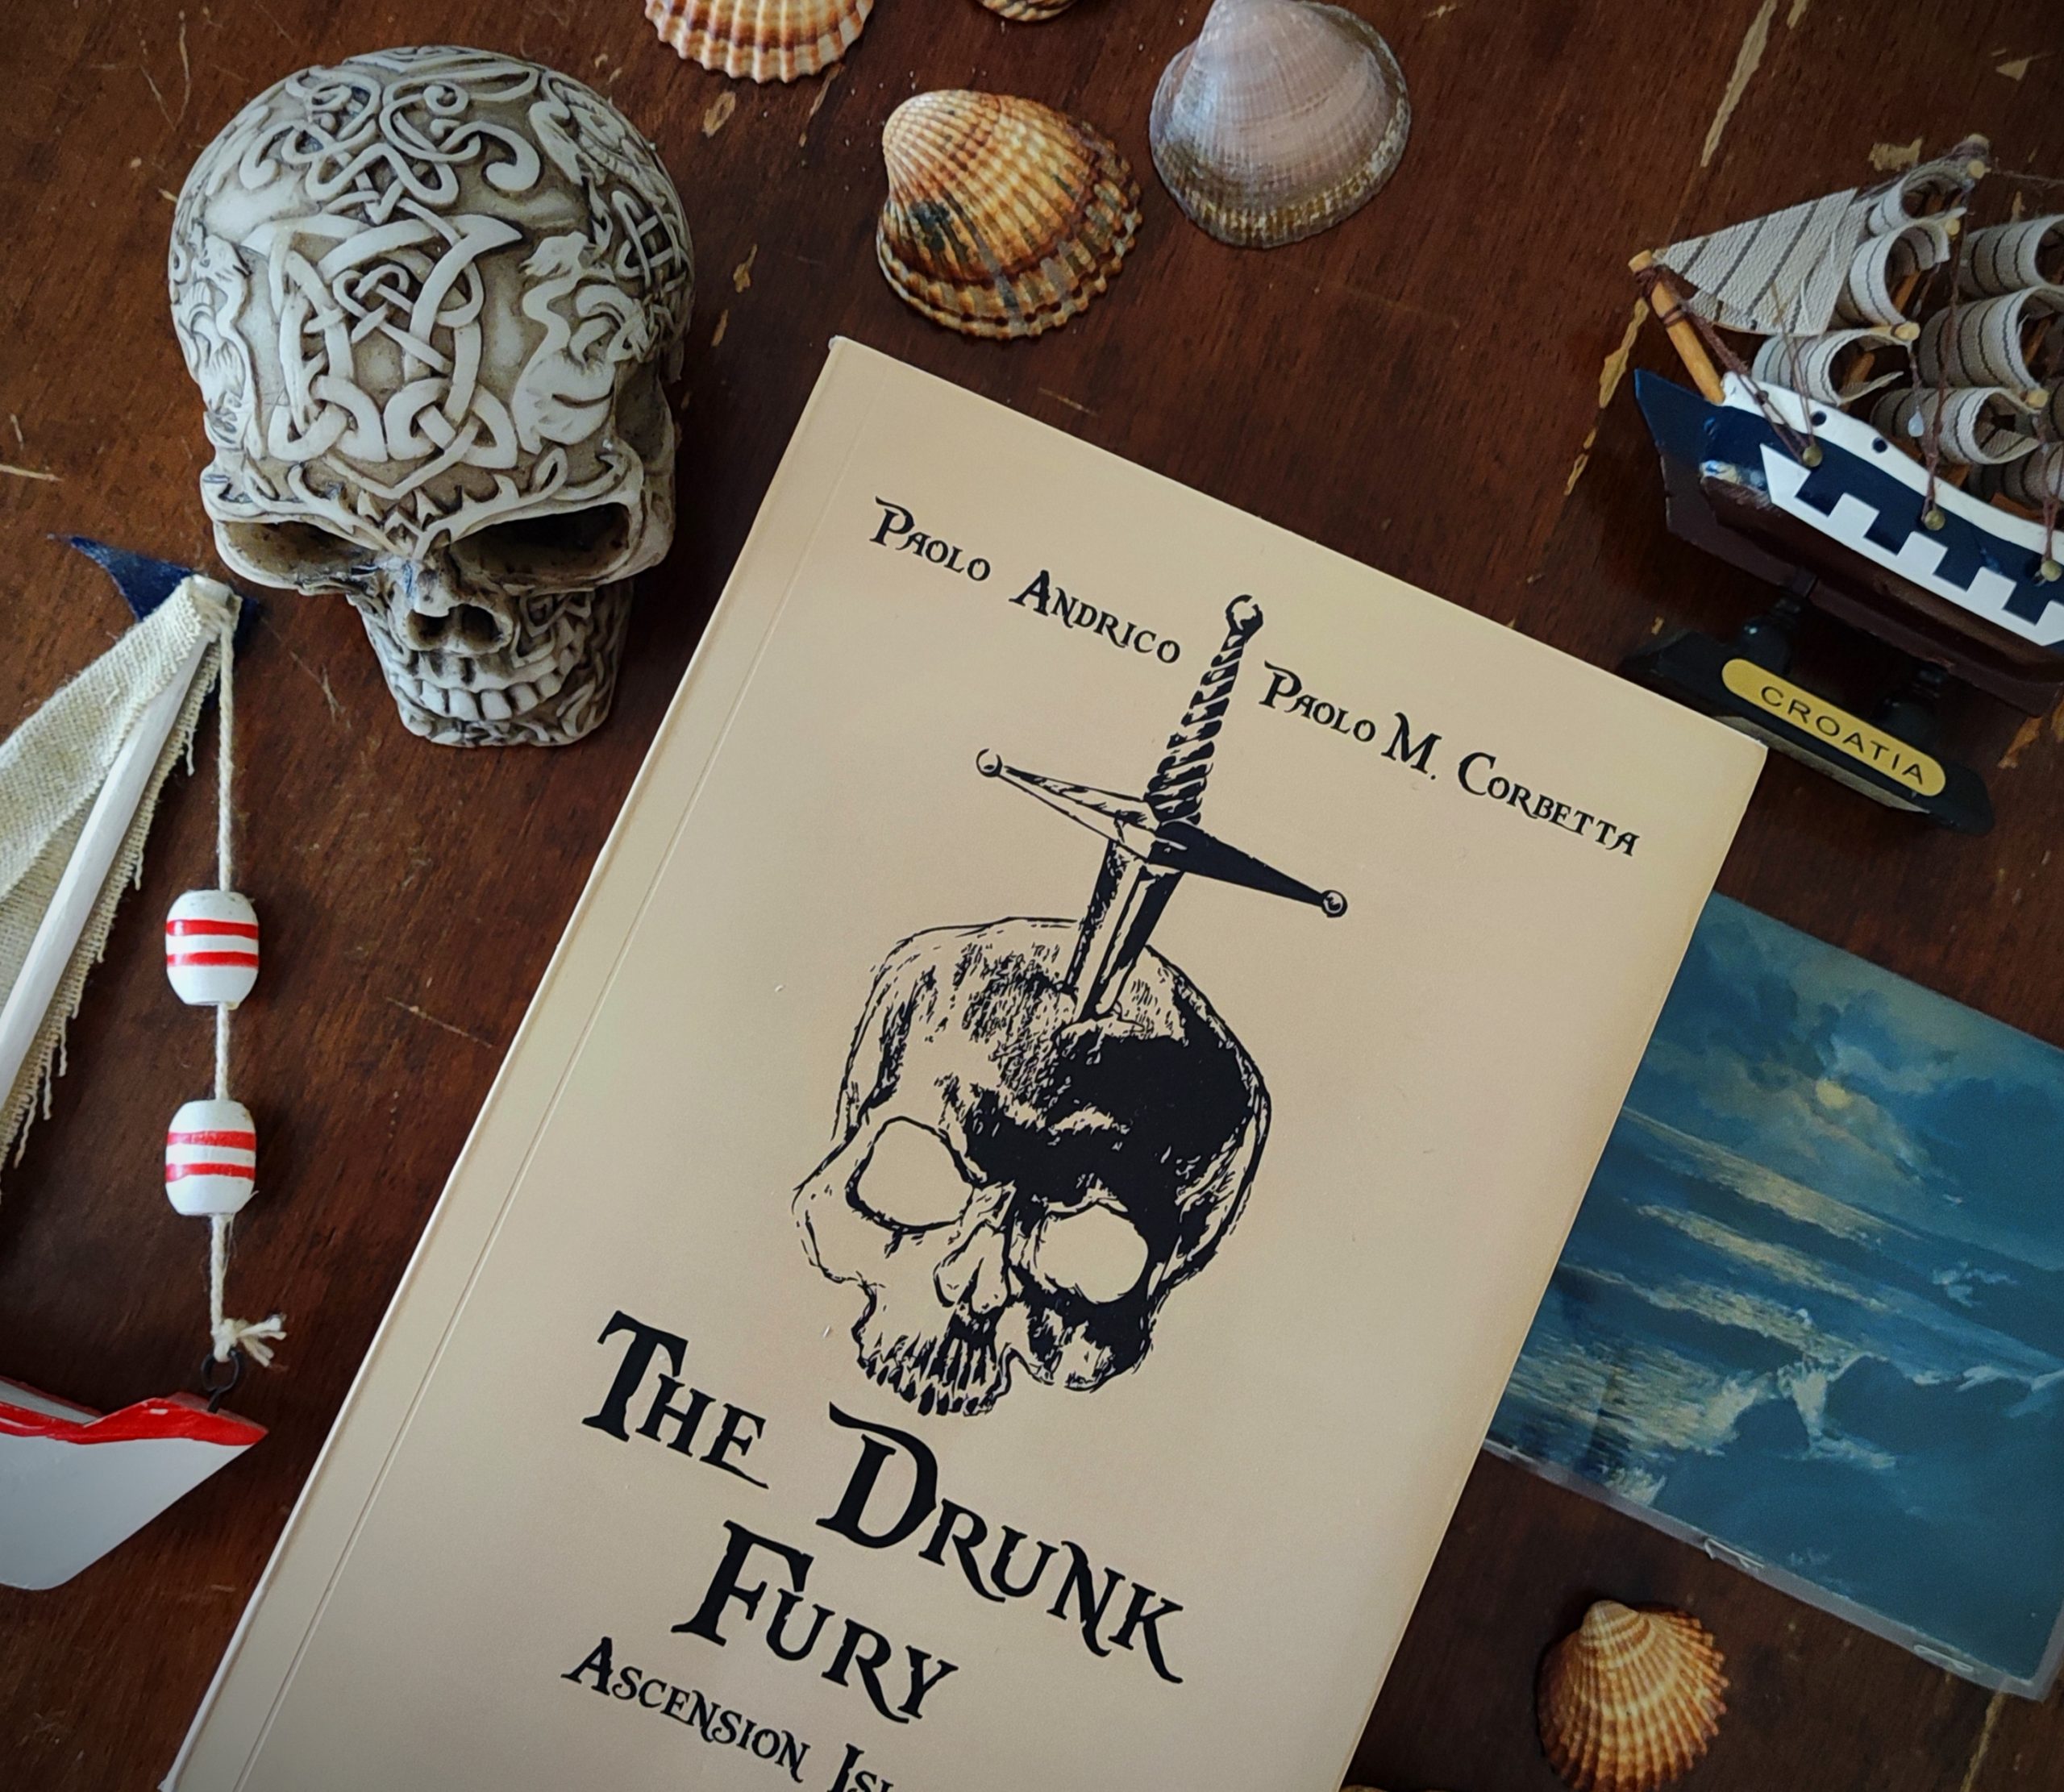 The Drunk Fury. Ascension Island di Paolo Andrico e Paolo M. Corbetta